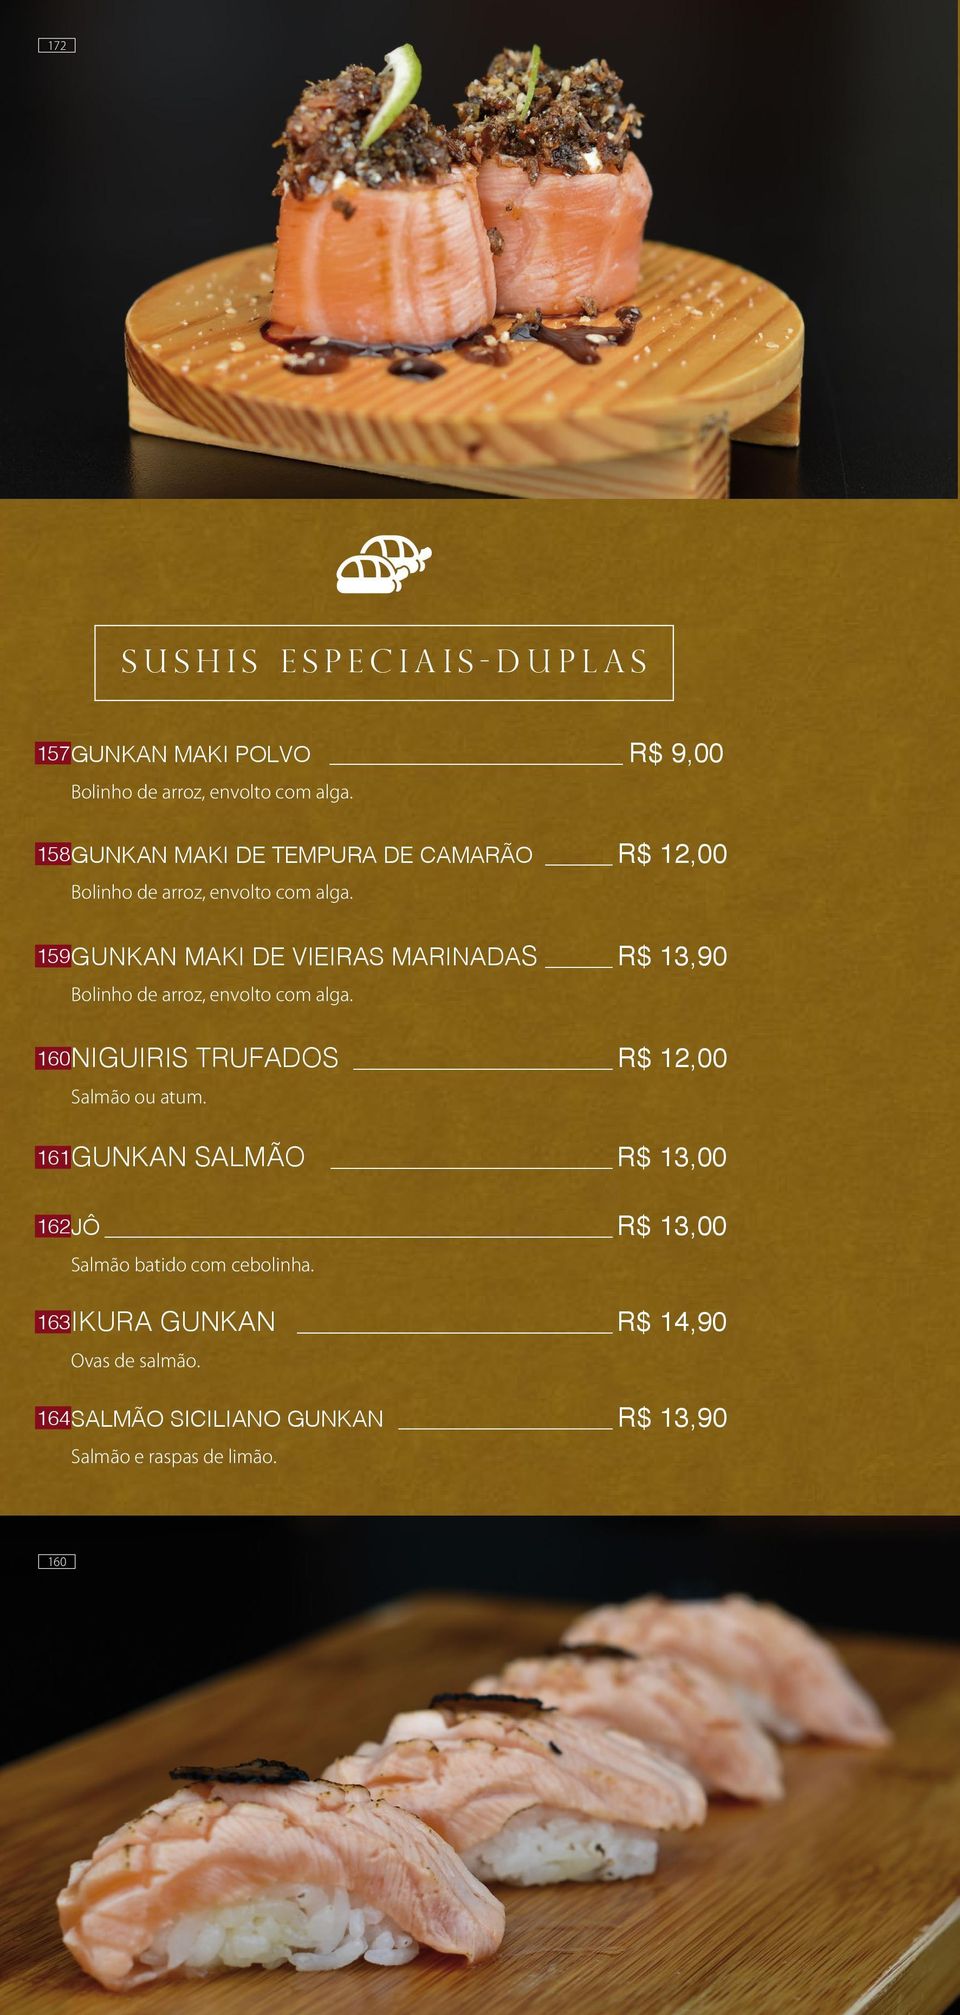 GUNKAN MAKI DE VIEIRAS MARINADAS R$ 13,90 Bolinho de arroz, envolto com alga. NIGUIRIS TRUFADOS R$ 12,00 Salmão ou atum.